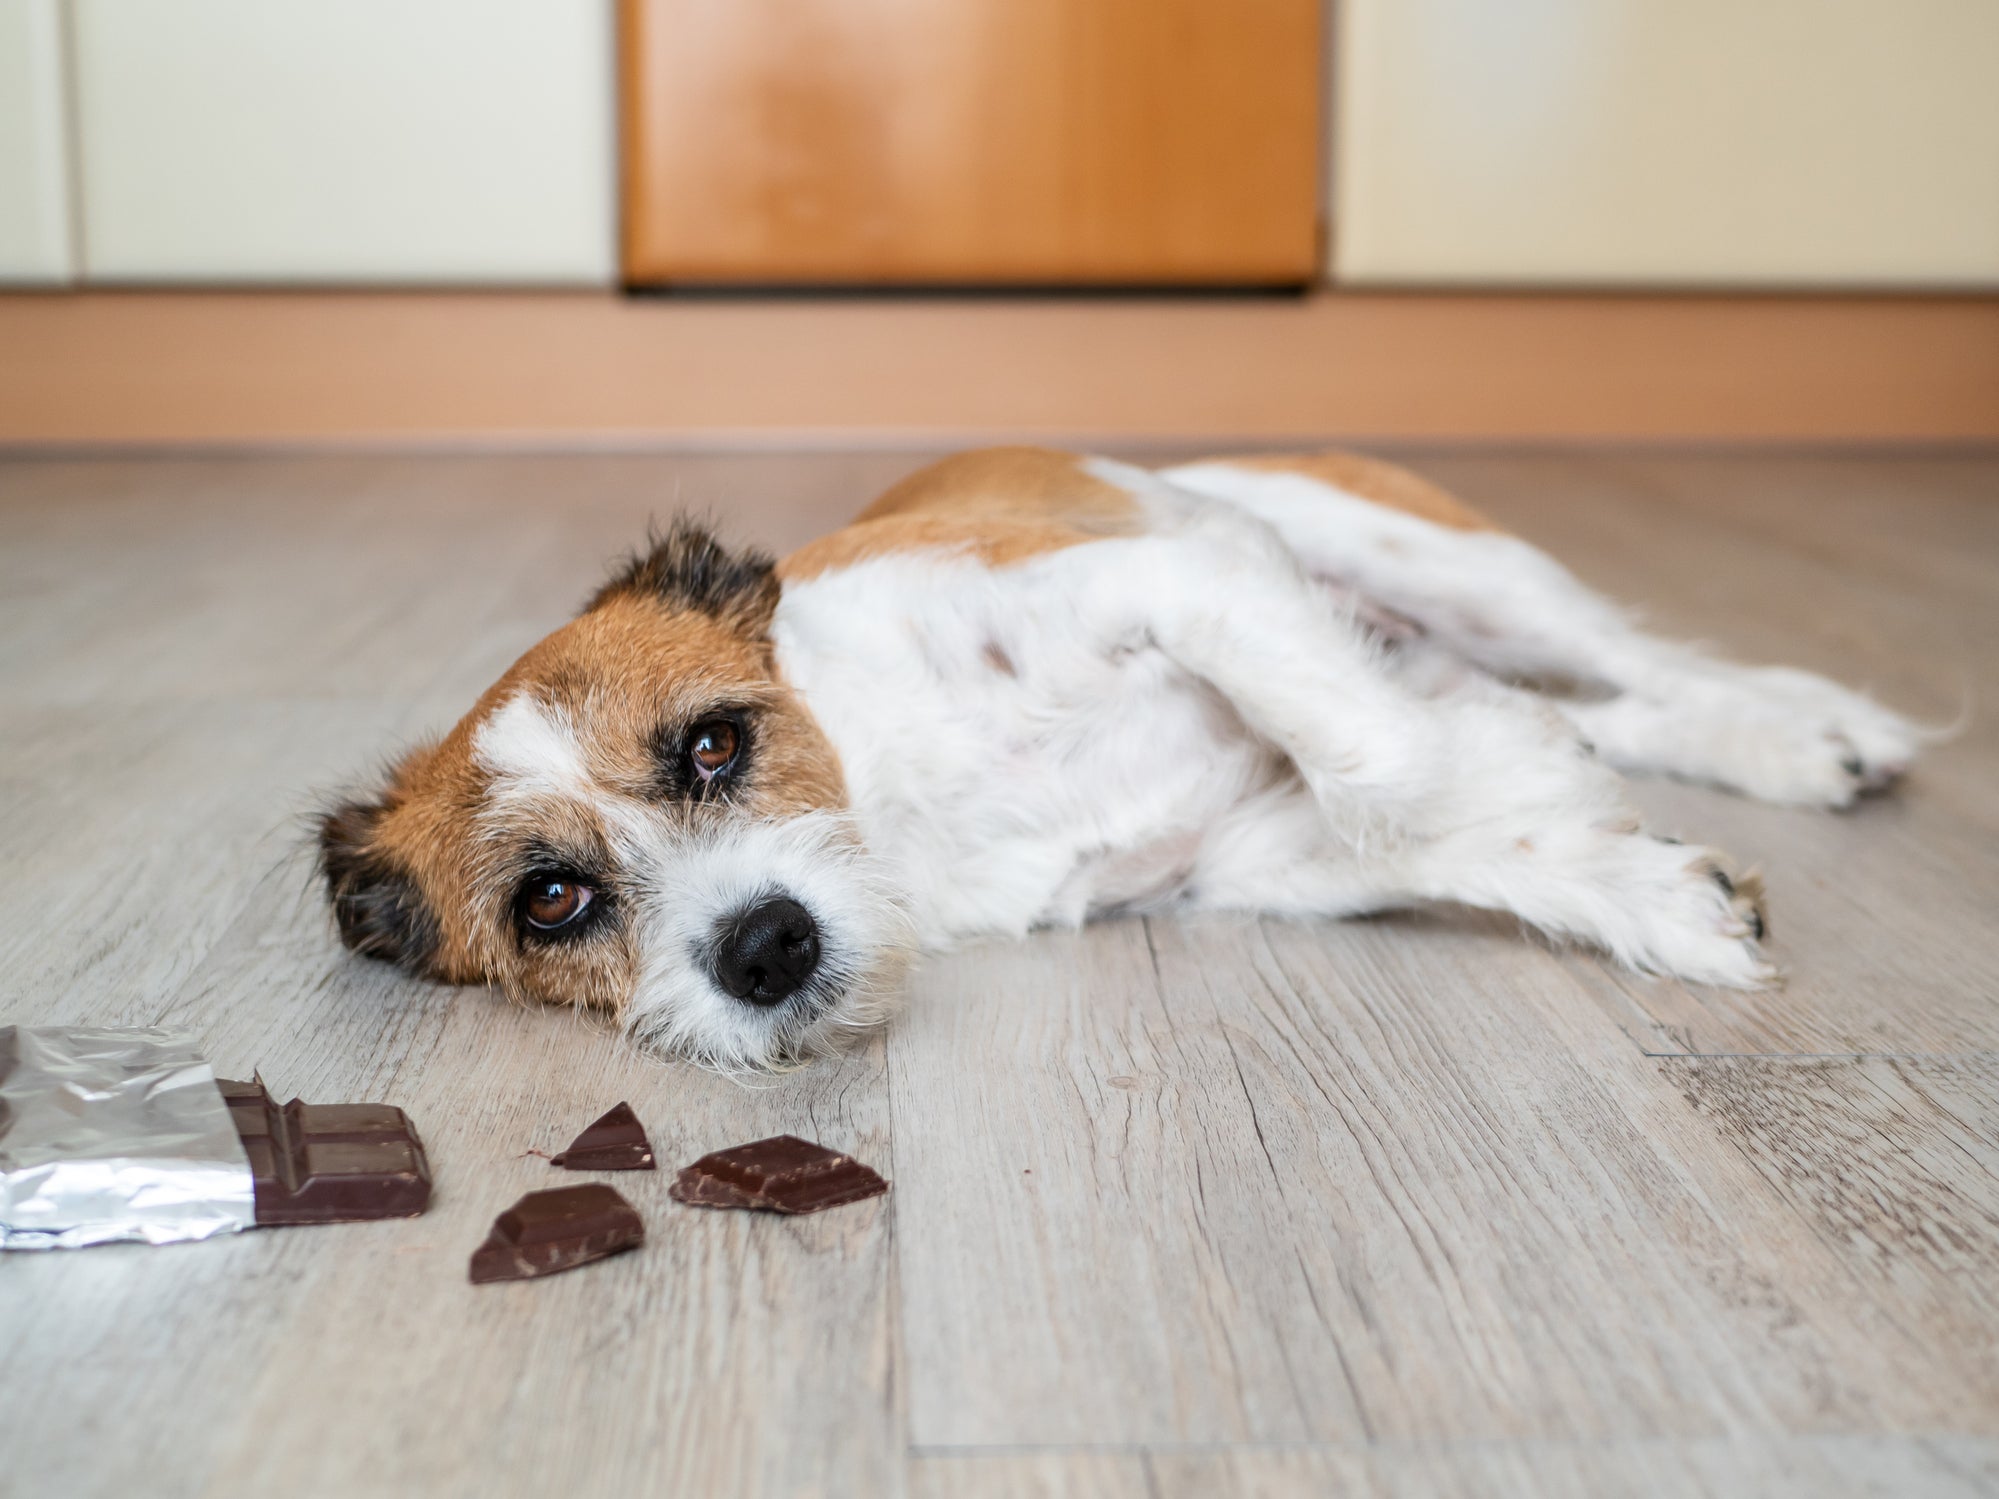 Cãozinho deitado no chão perto de pedaços de barra de chocolate